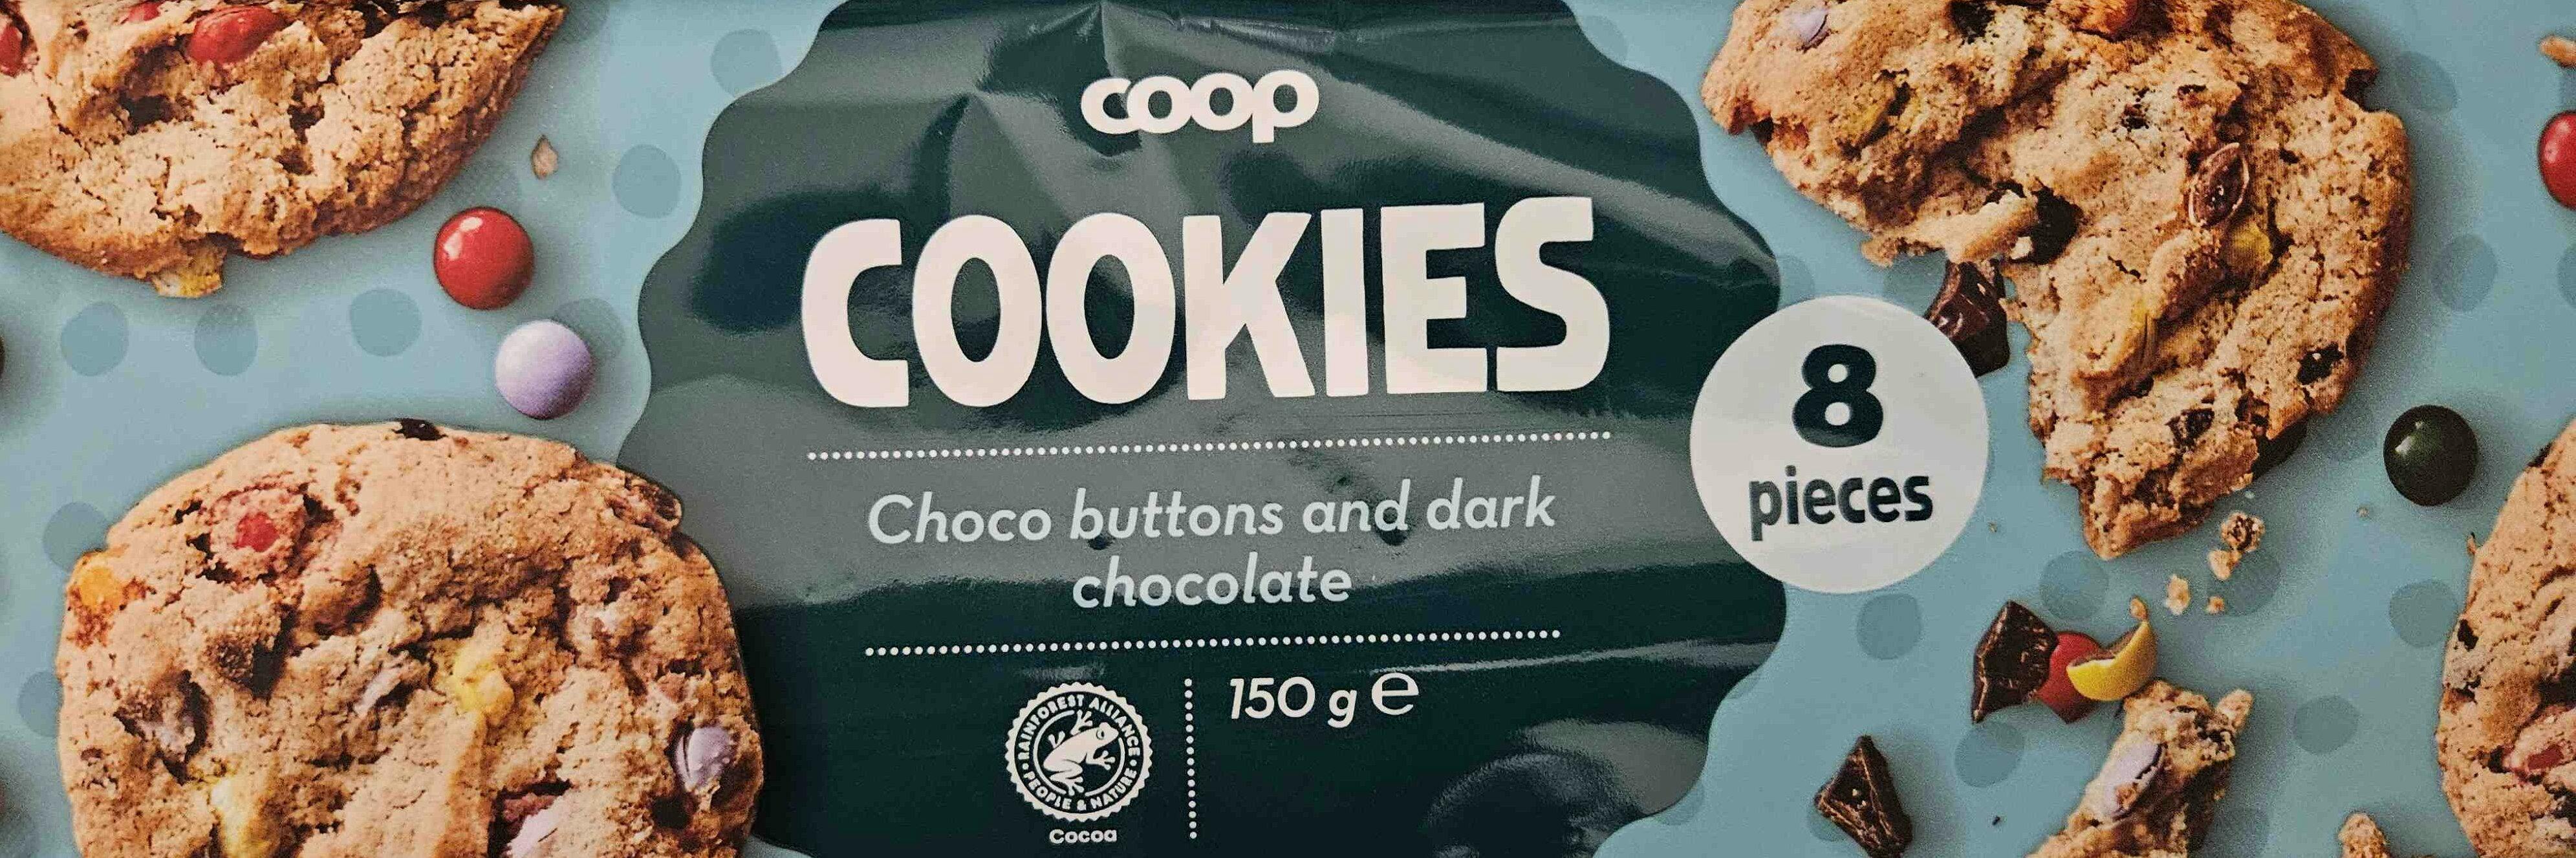 Coop tilbagekalder to slags cookies efter mistanke om små metalstykker i småkagerne.&nbsp;